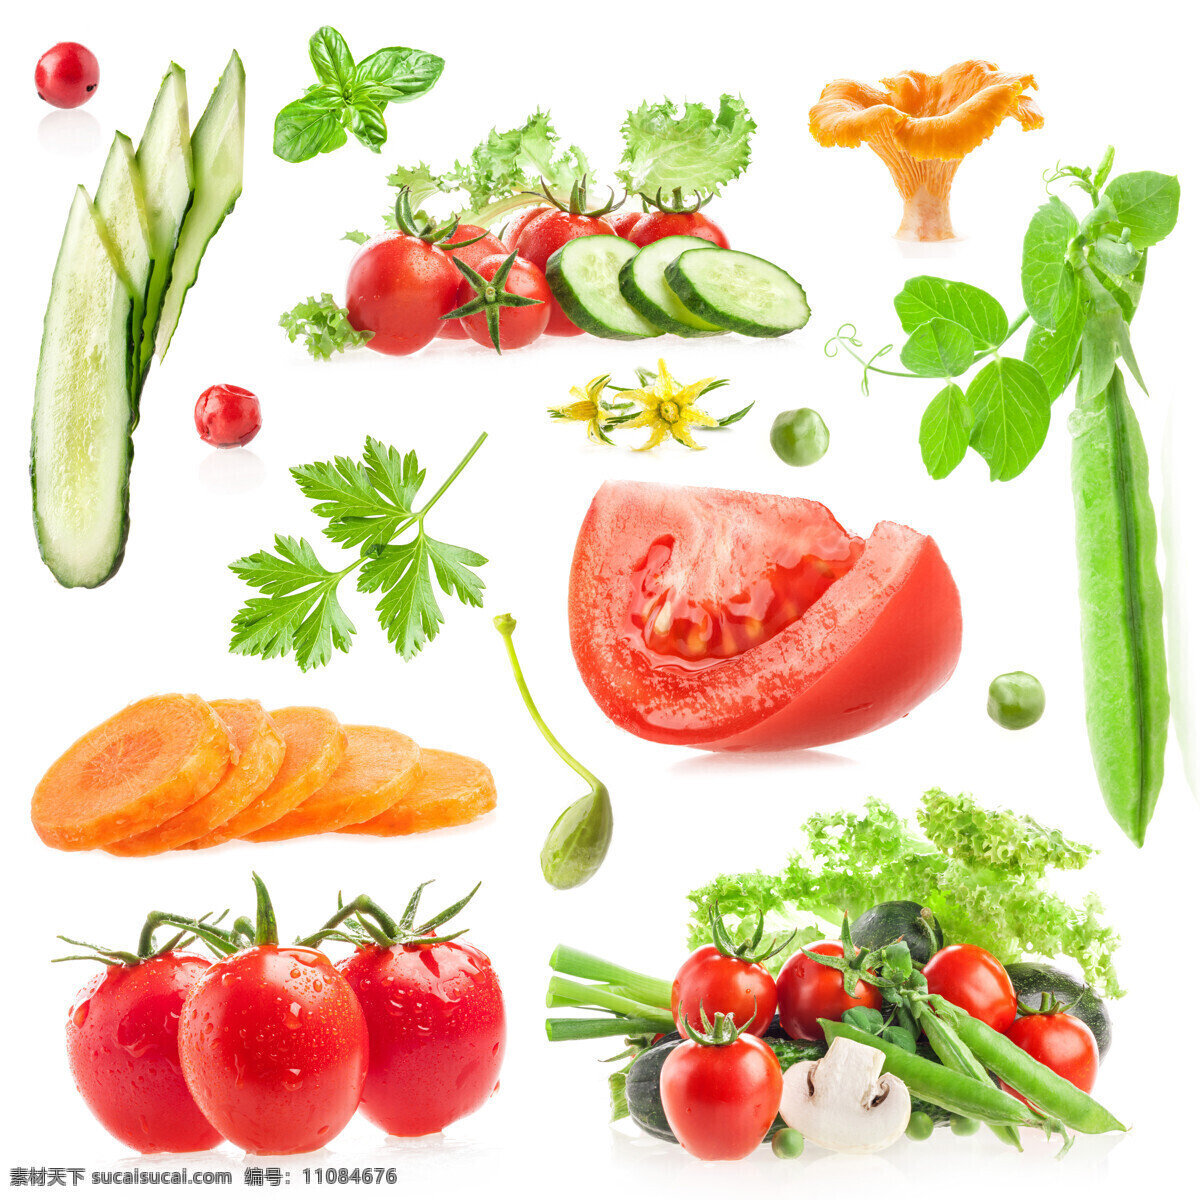 各种 食物 材料 各种食物材料 蔬菜 餐厅美食 西红柿 豆角 豆黄瓜 蔬菜图片 餐饮美食